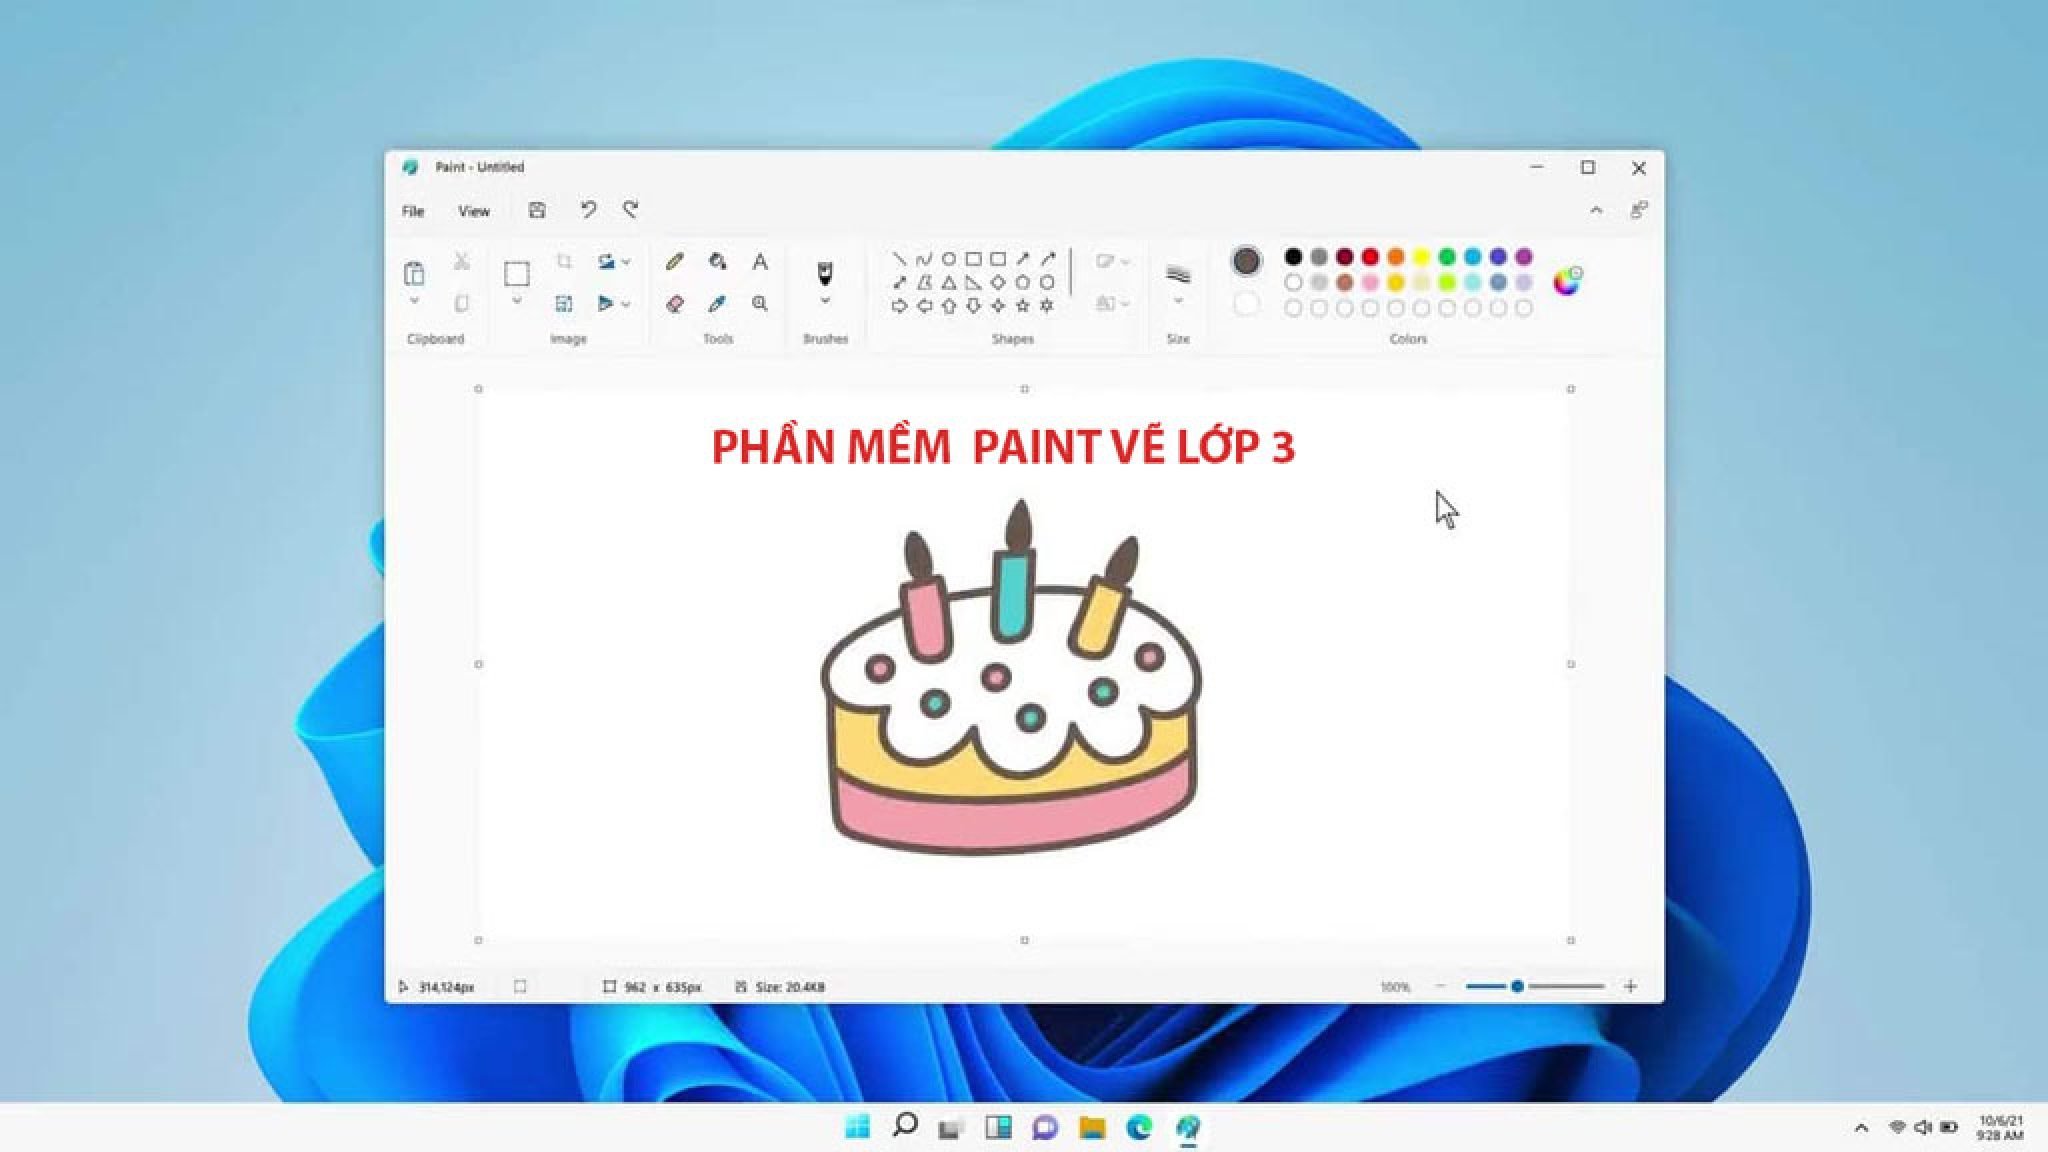 Phan Mem Paint Ve 3 Lop 2048x1152 